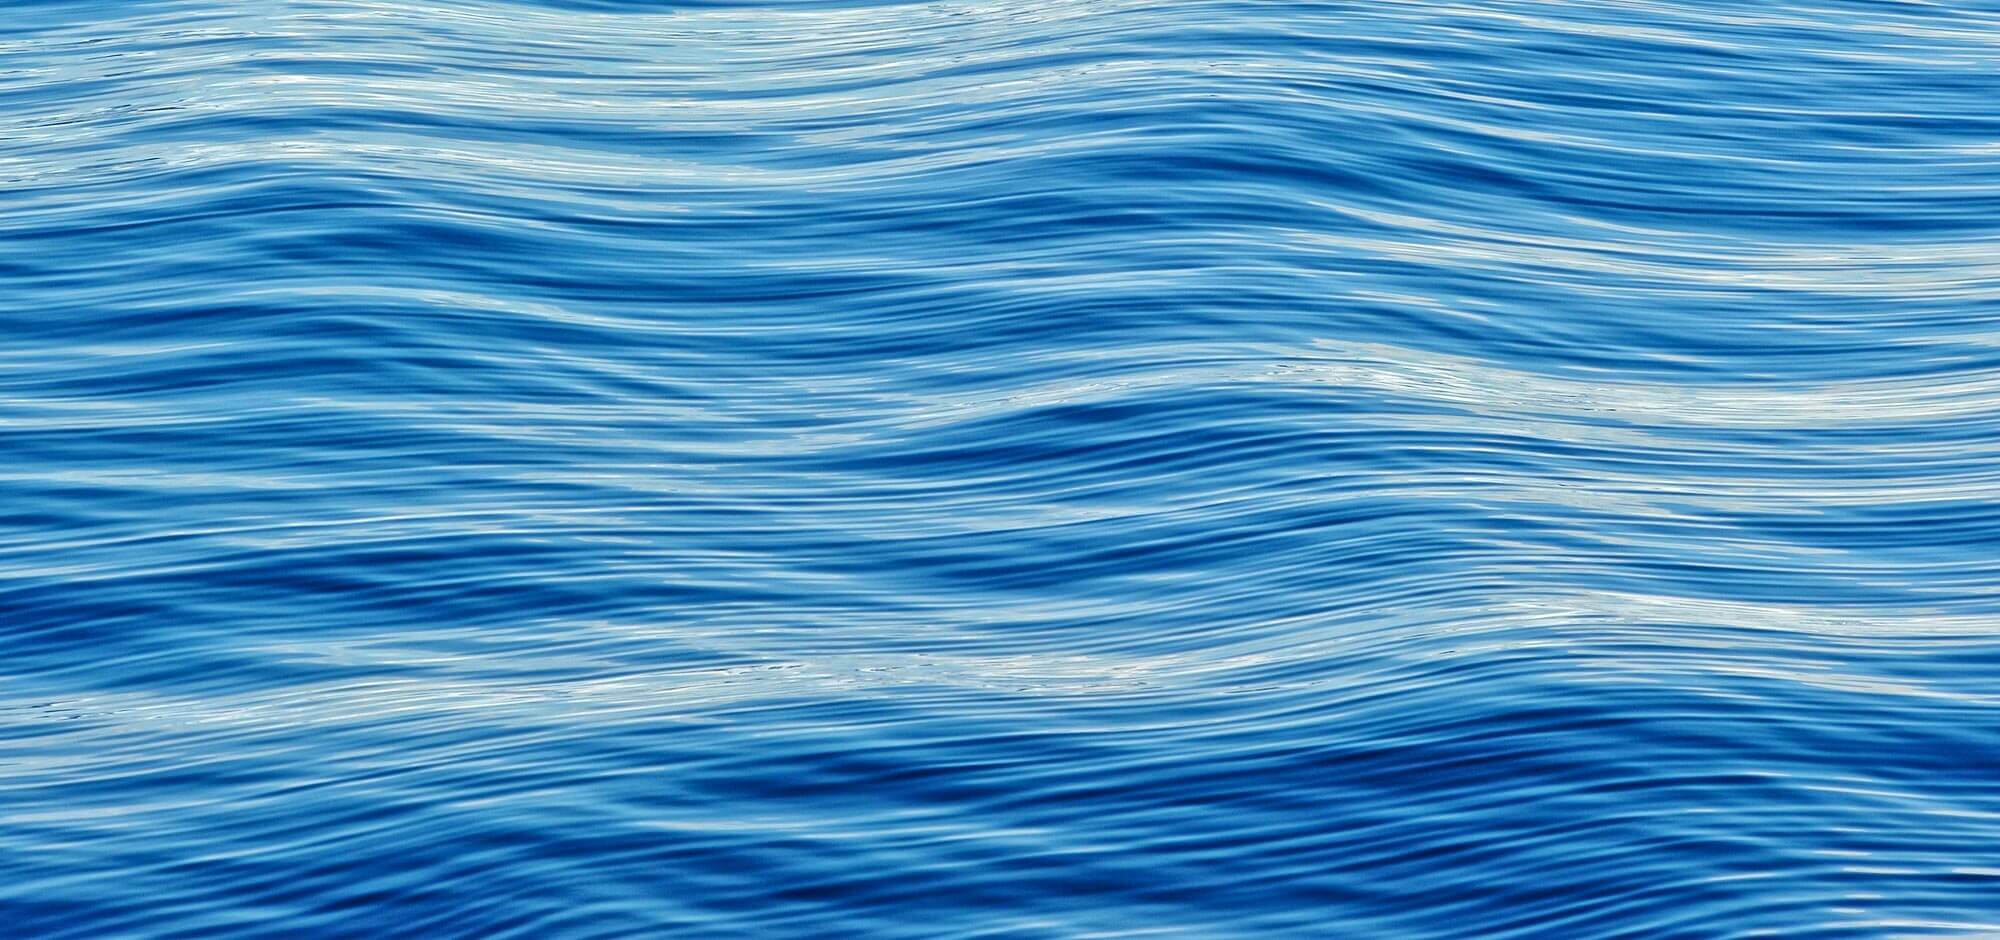 المحيط الأزرق